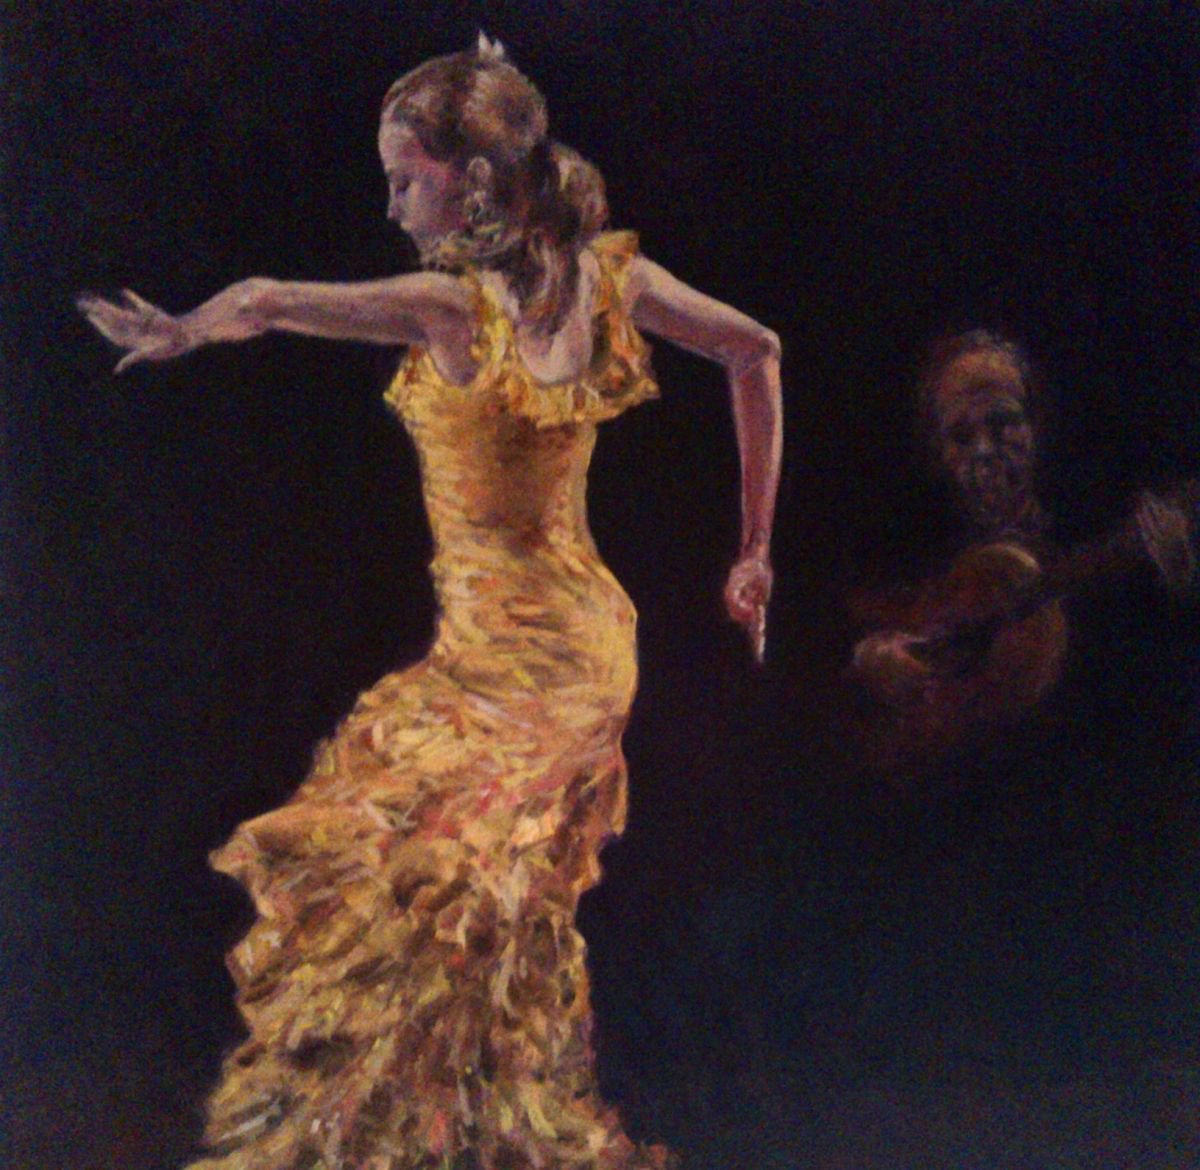 flamenco by Sebastian Beianu